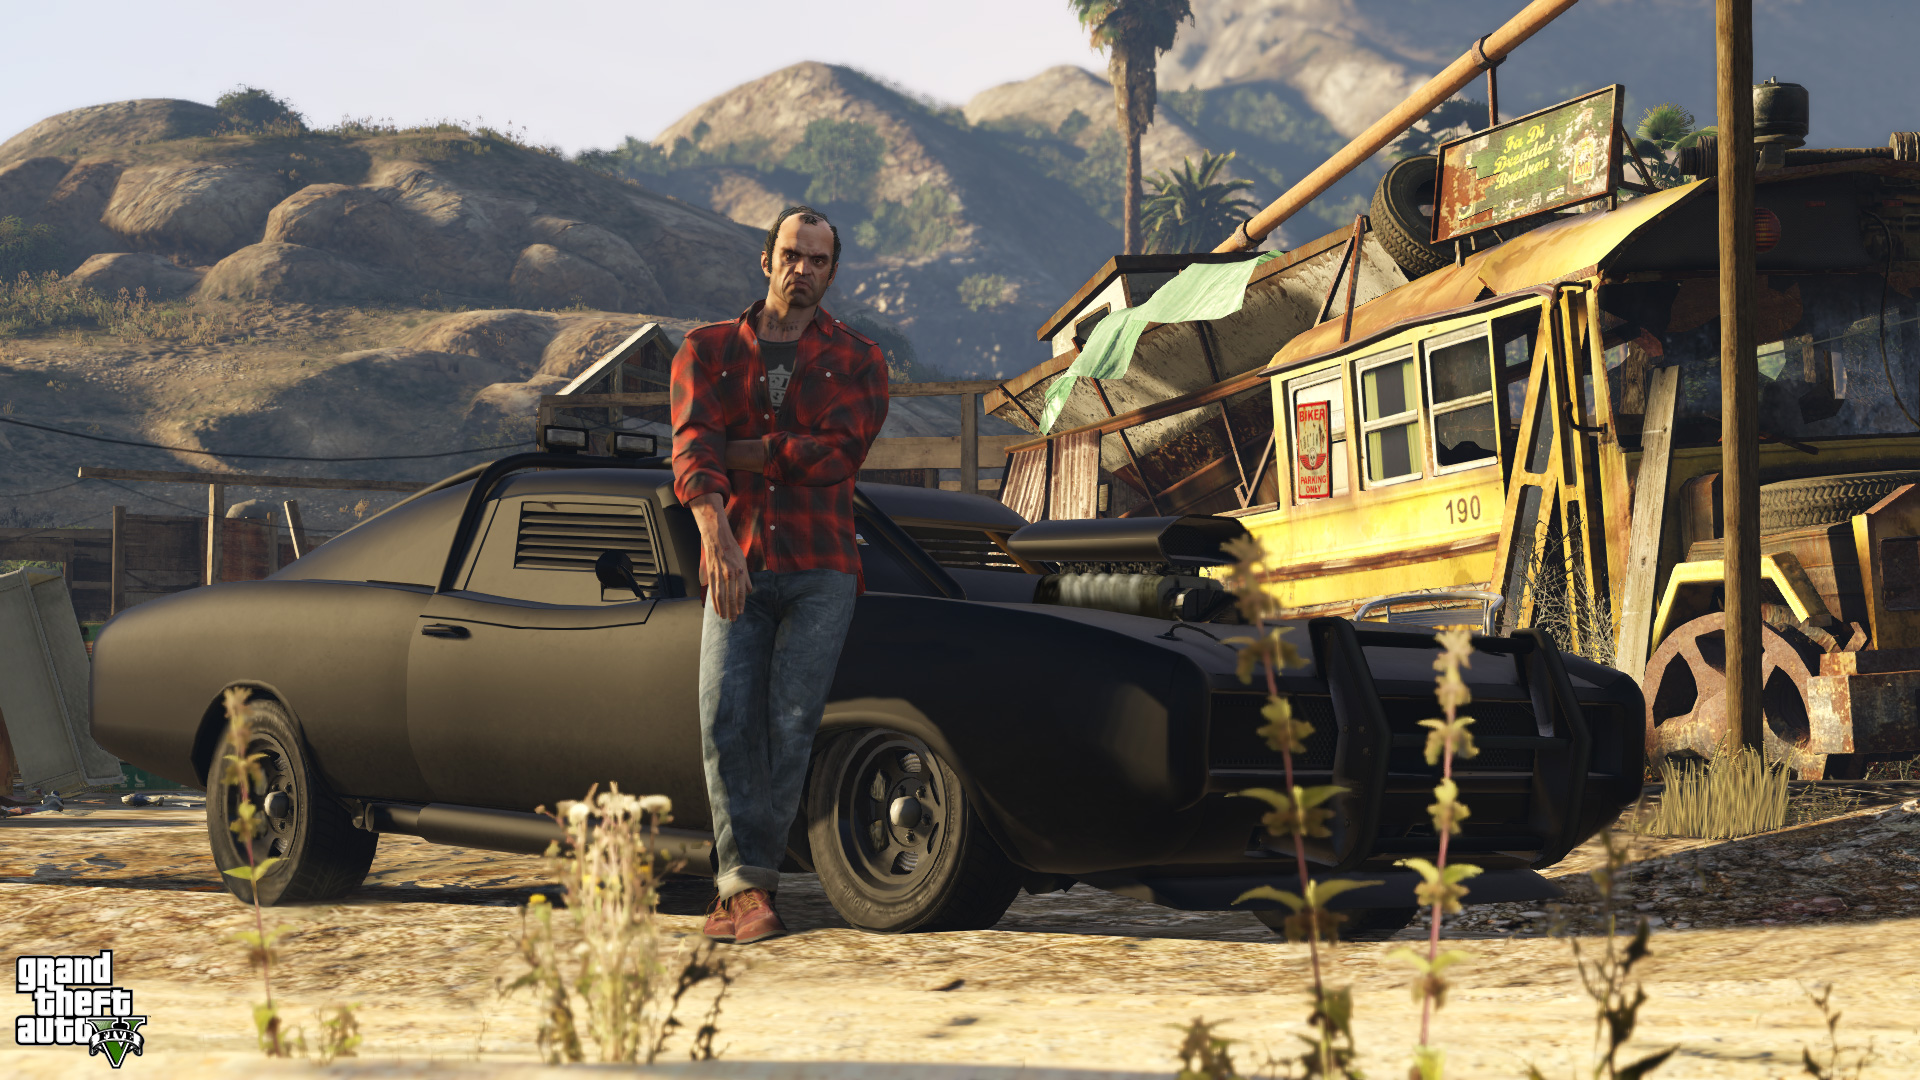 Immagine pubblicata in relazione al seguente contenuto: Rockstar pubblica nuove info e screenshots di Grand Theft Auto V | Nome immagine: news21805_Grand-Theft-Auto-V_2.jpg